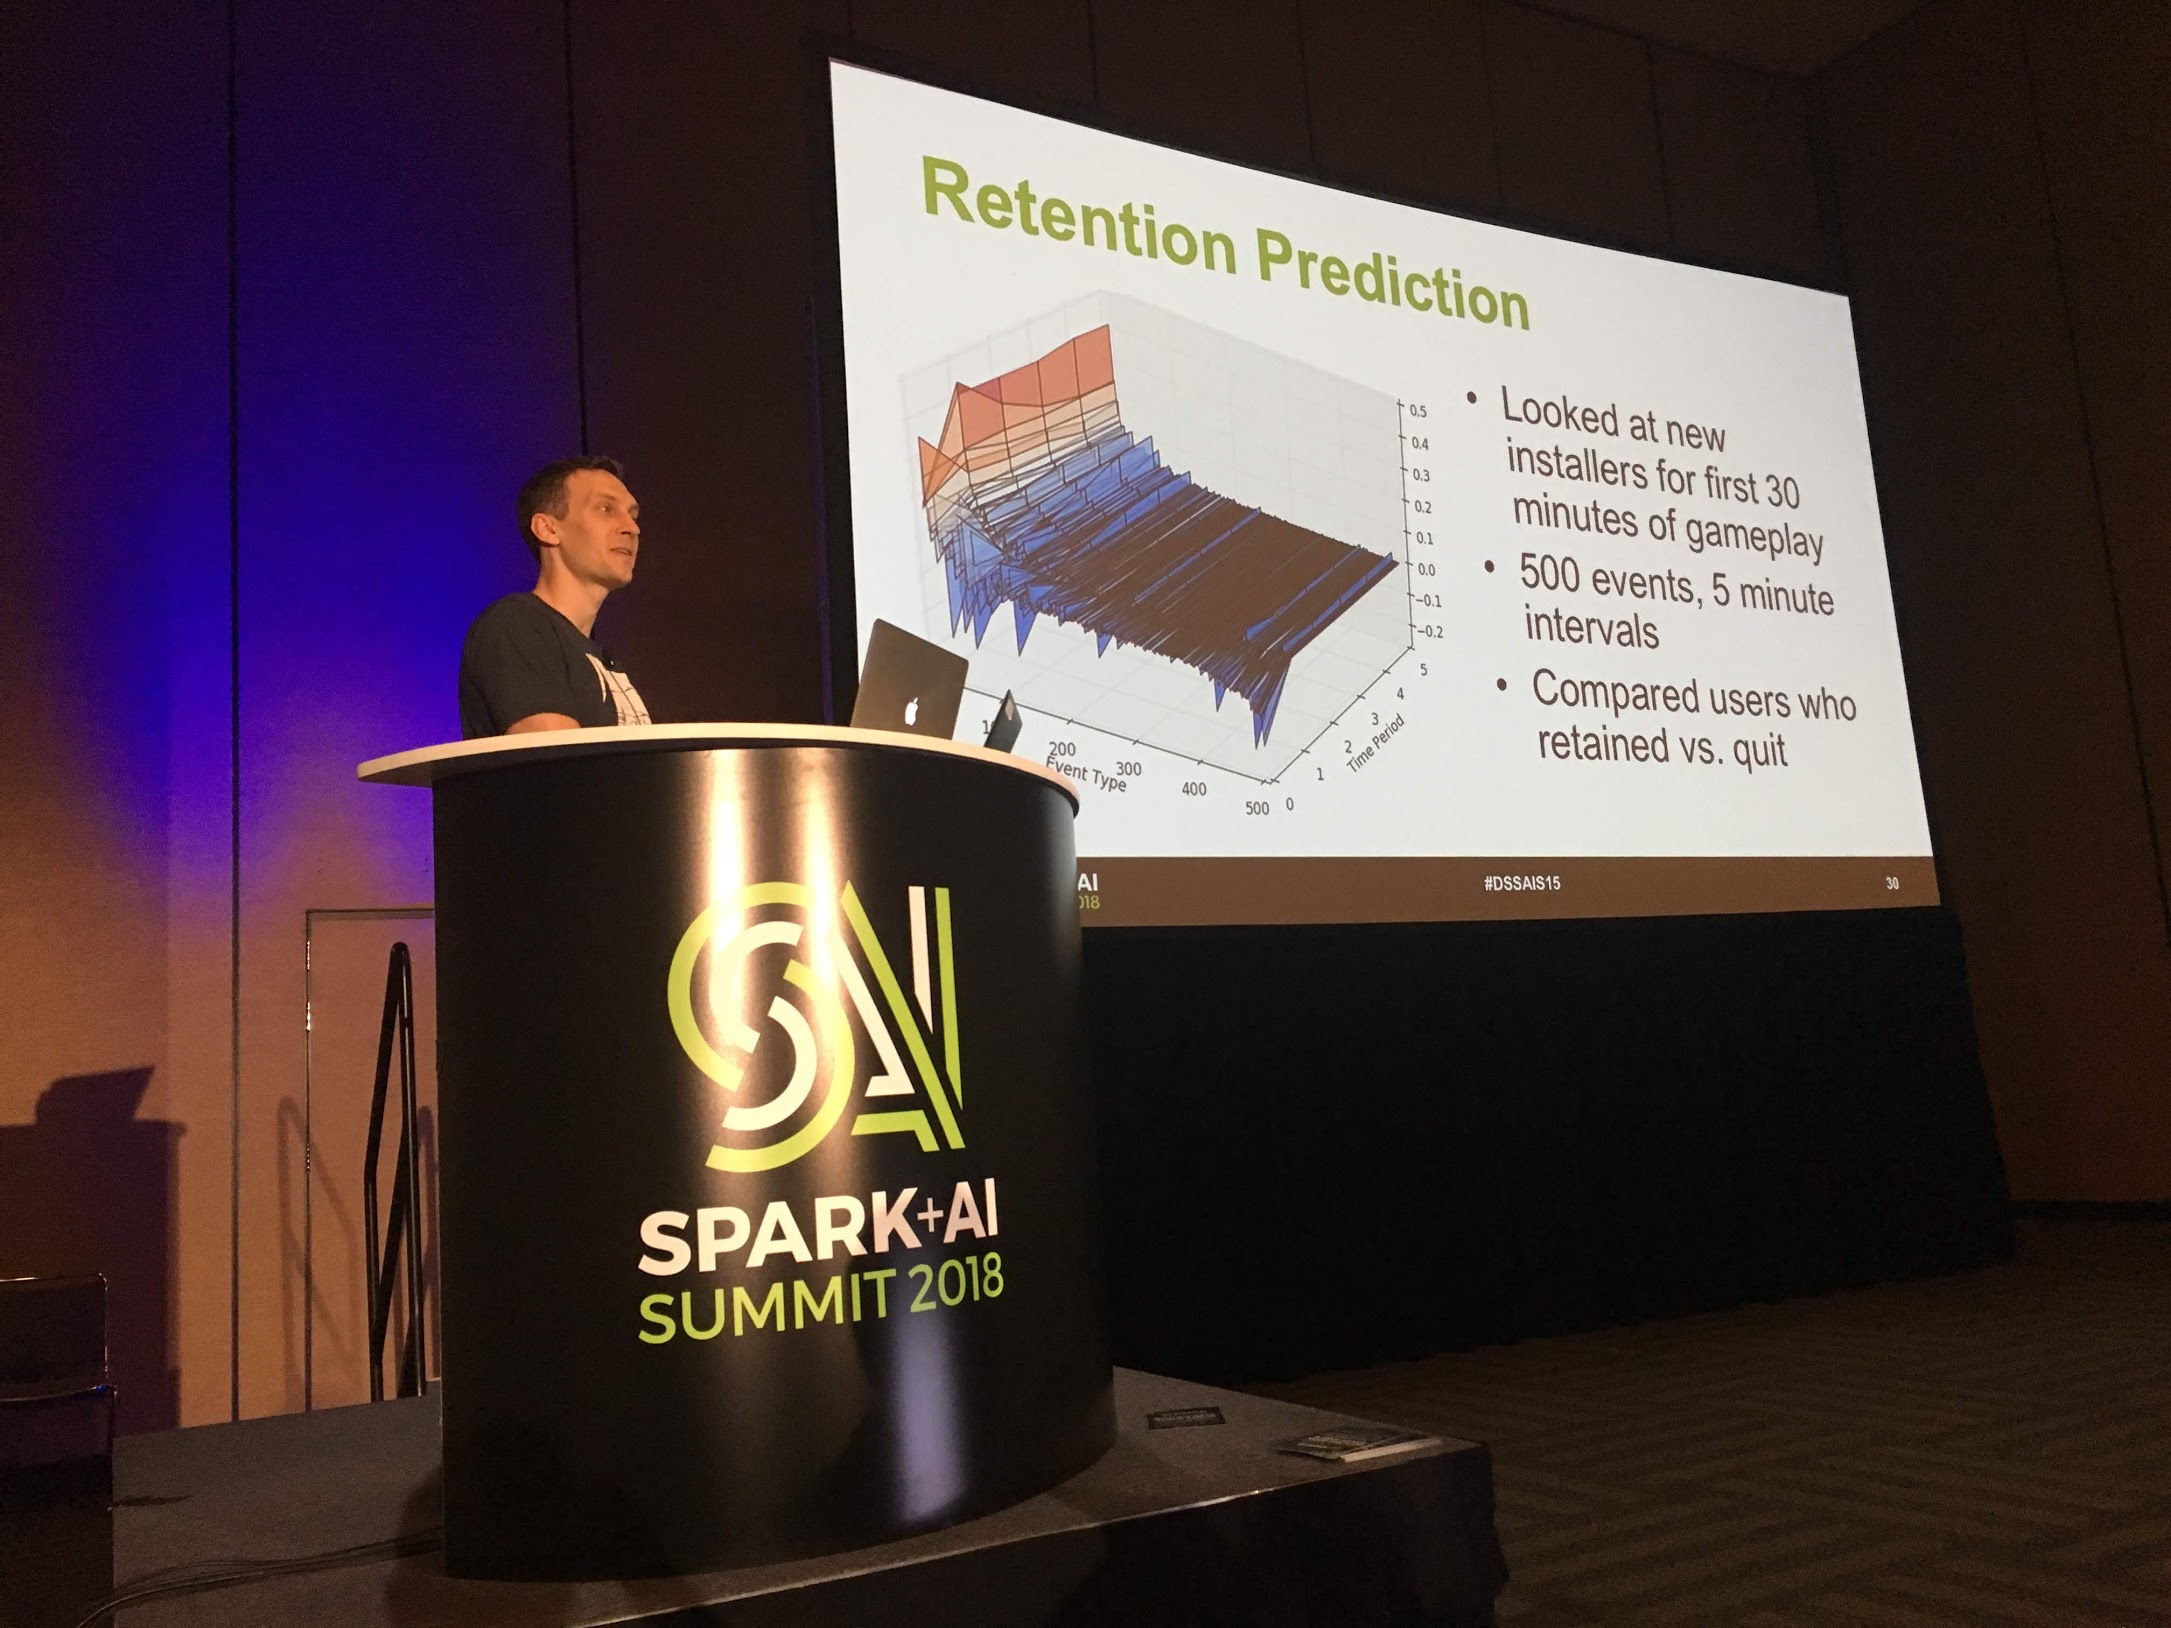 Speaking at Spark Summit 2018